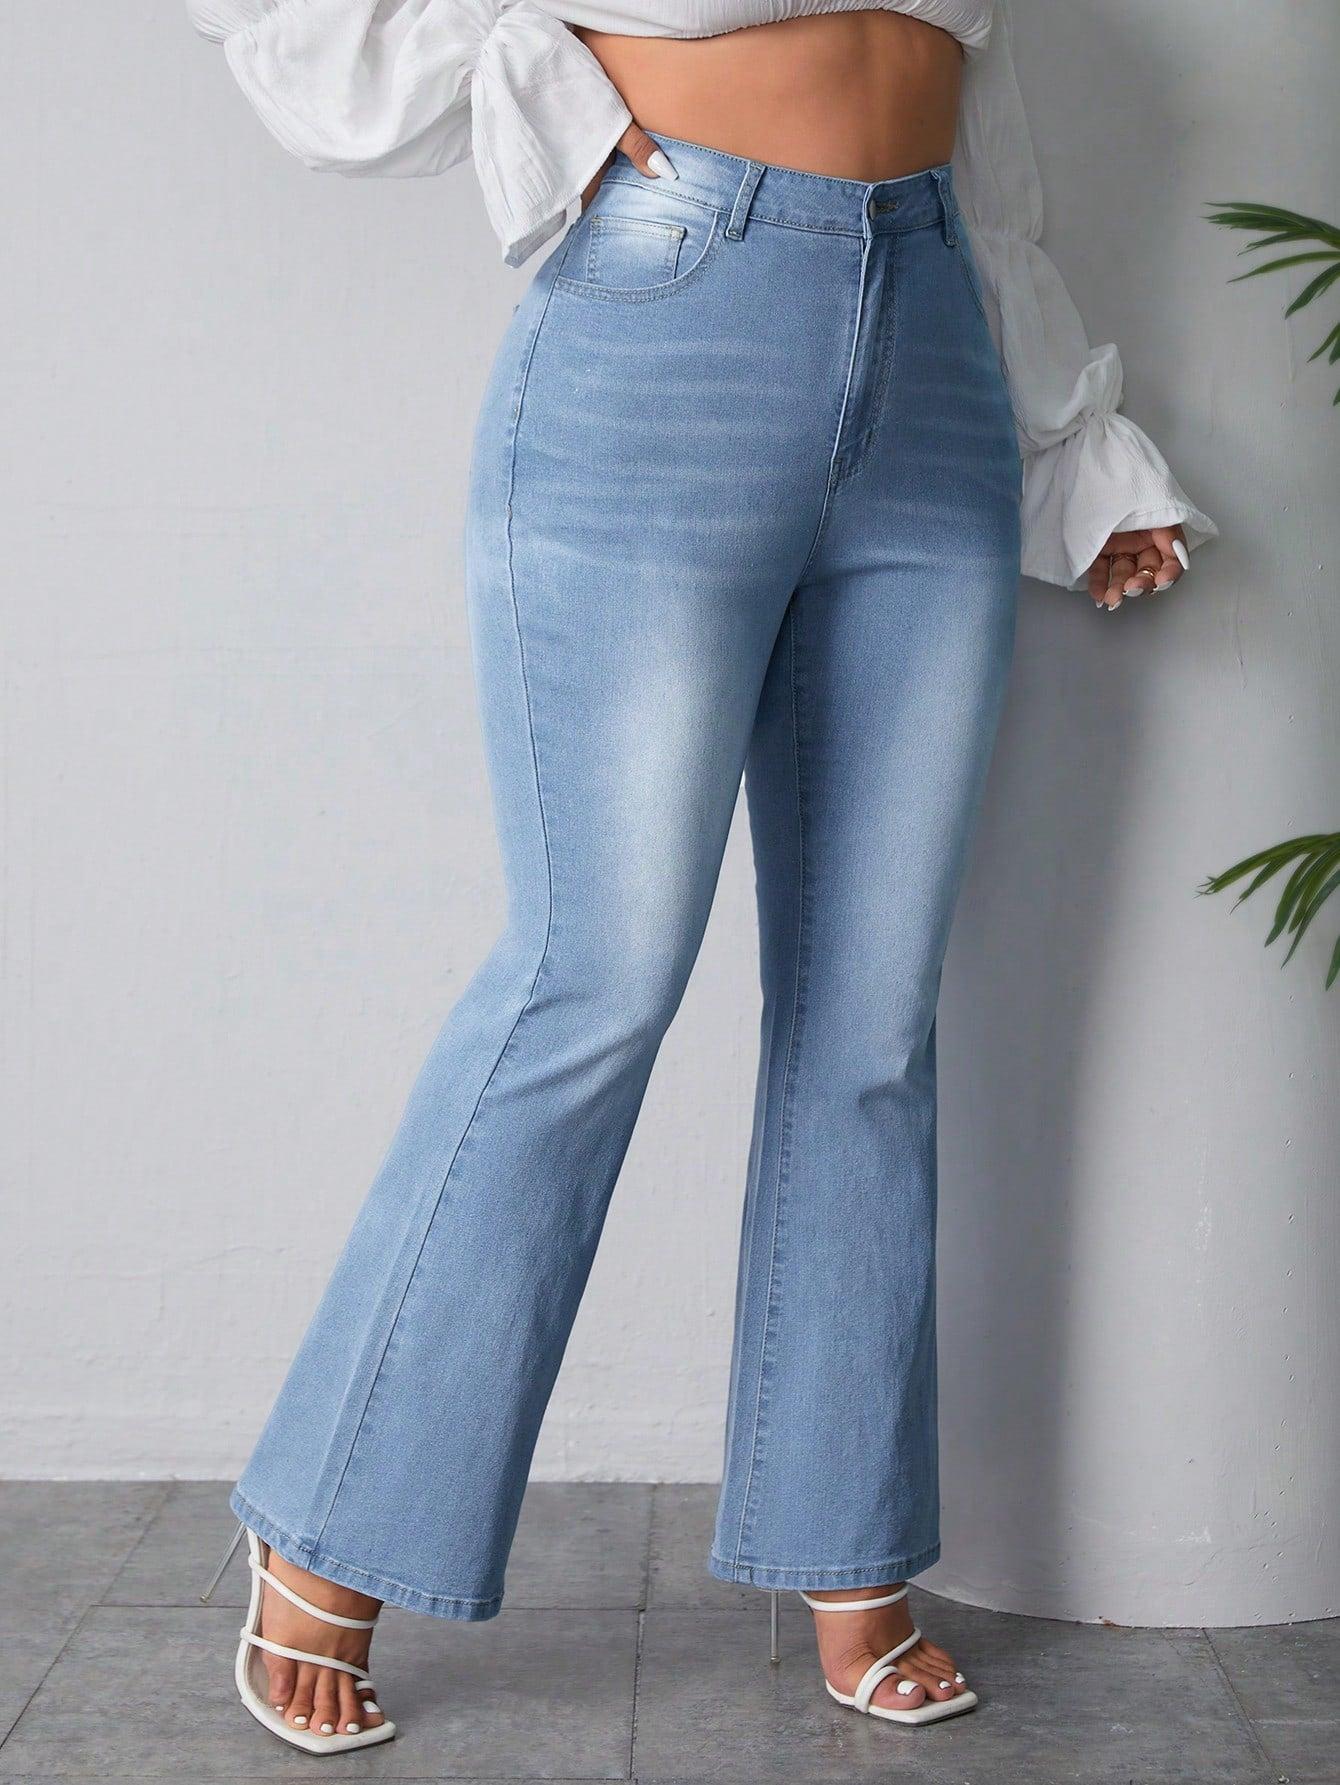 spodnie dzwony flare jeans high waist kieszenie zamek